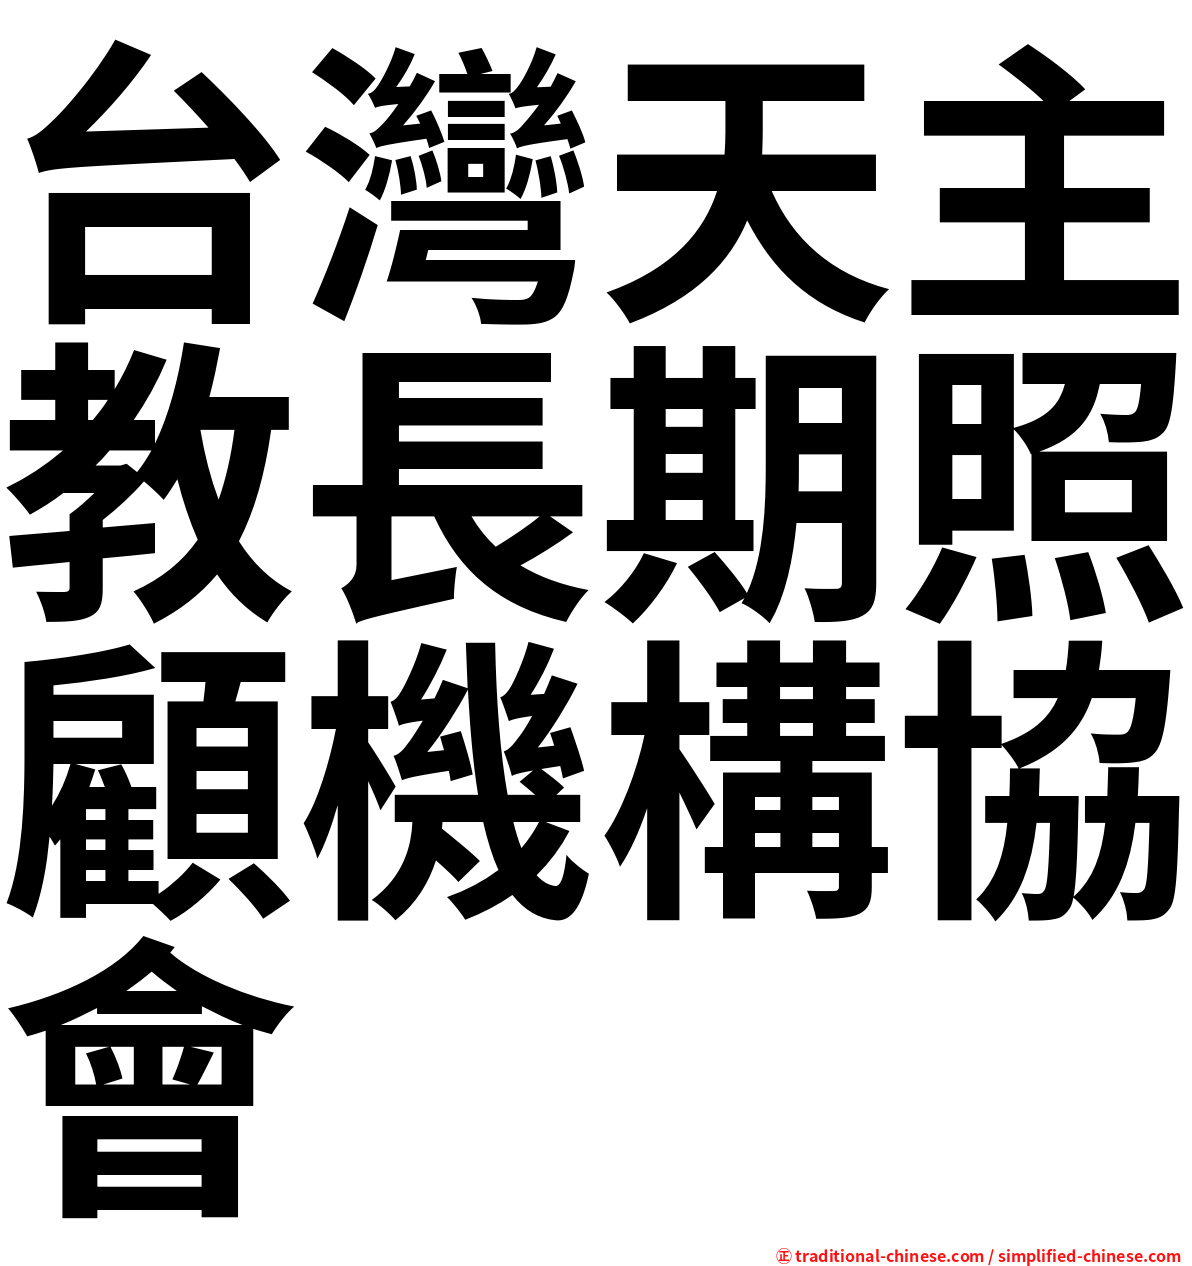 台灣天主教長期照顧機構協會